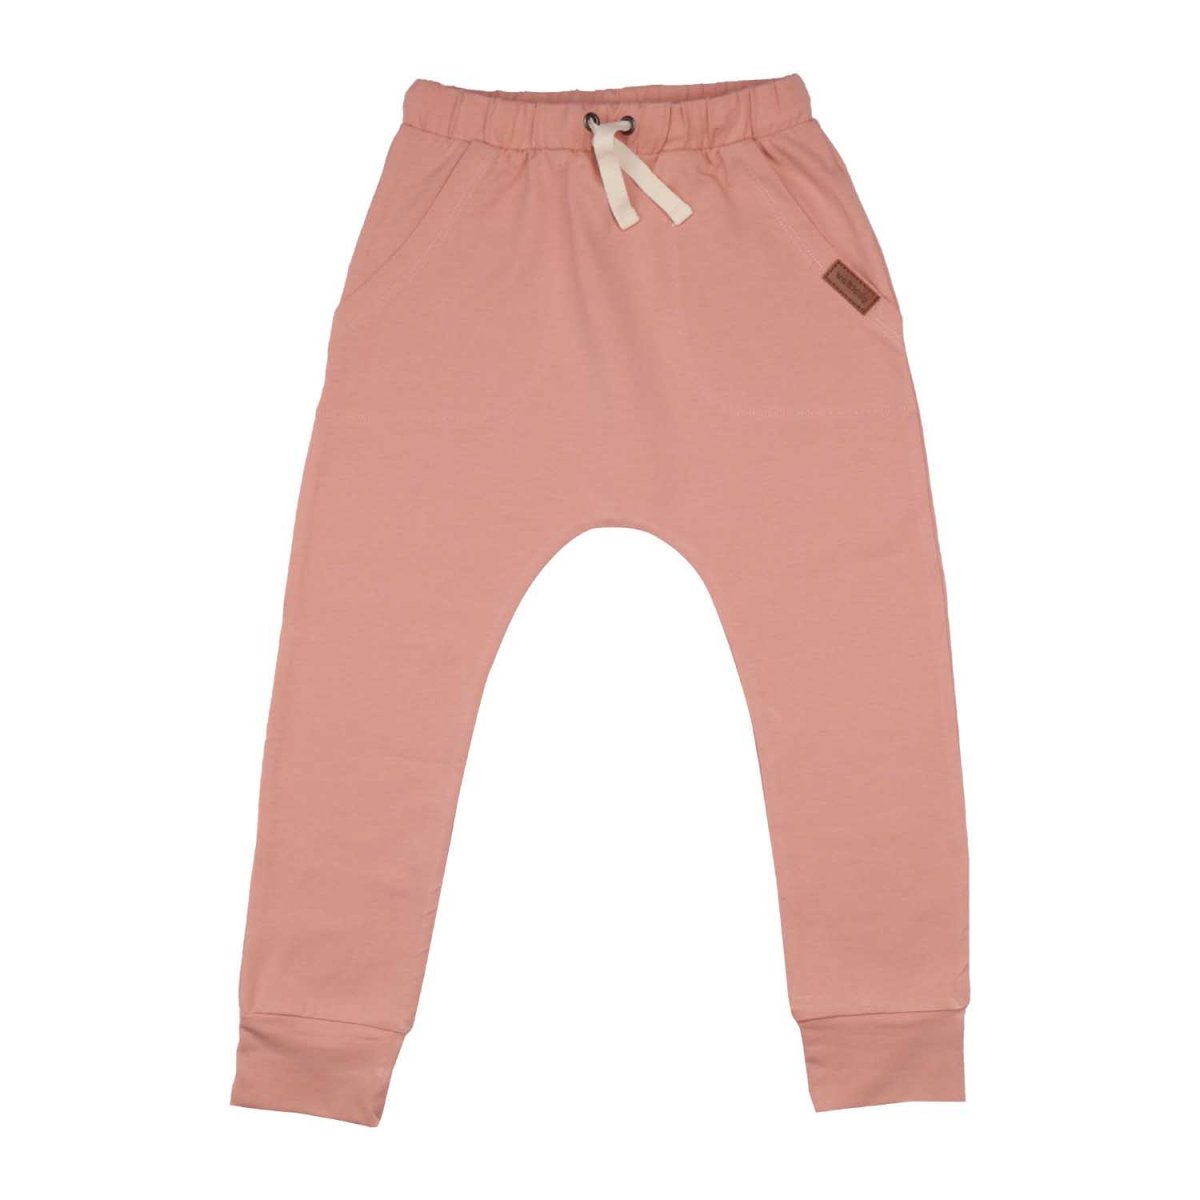 Pantaloni Baggy rosa chiaro per bambine in cotone biologico